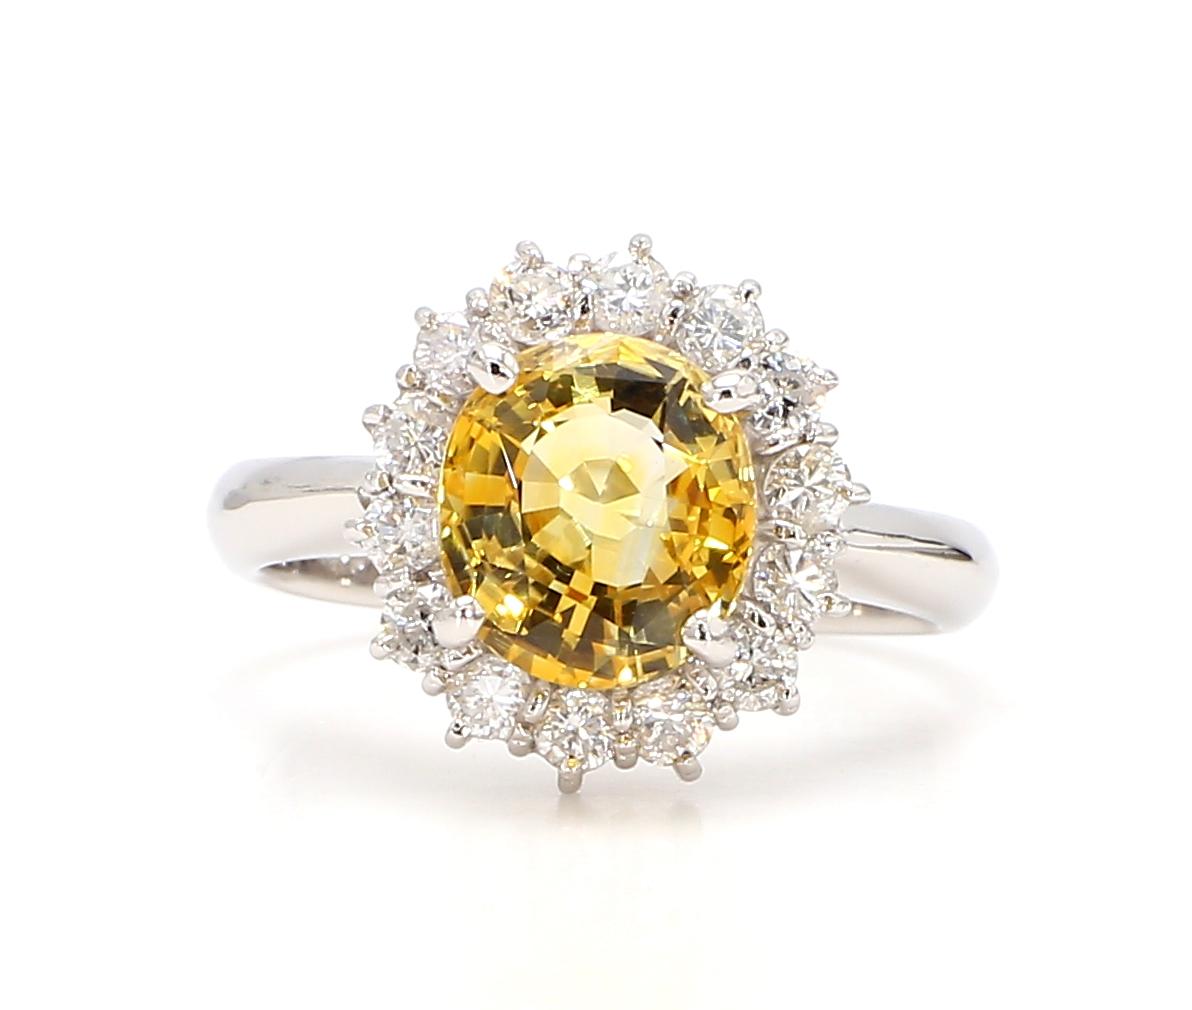 Cette exquise bague en diamant et saphir jaune est une véritable merveille d'élégance et de luxe. Réalisé avec une attention méticuleuse aux détails, il met en valeur la beauté intemporelle des diamants et l'allure captivante des saphirs jaunes.